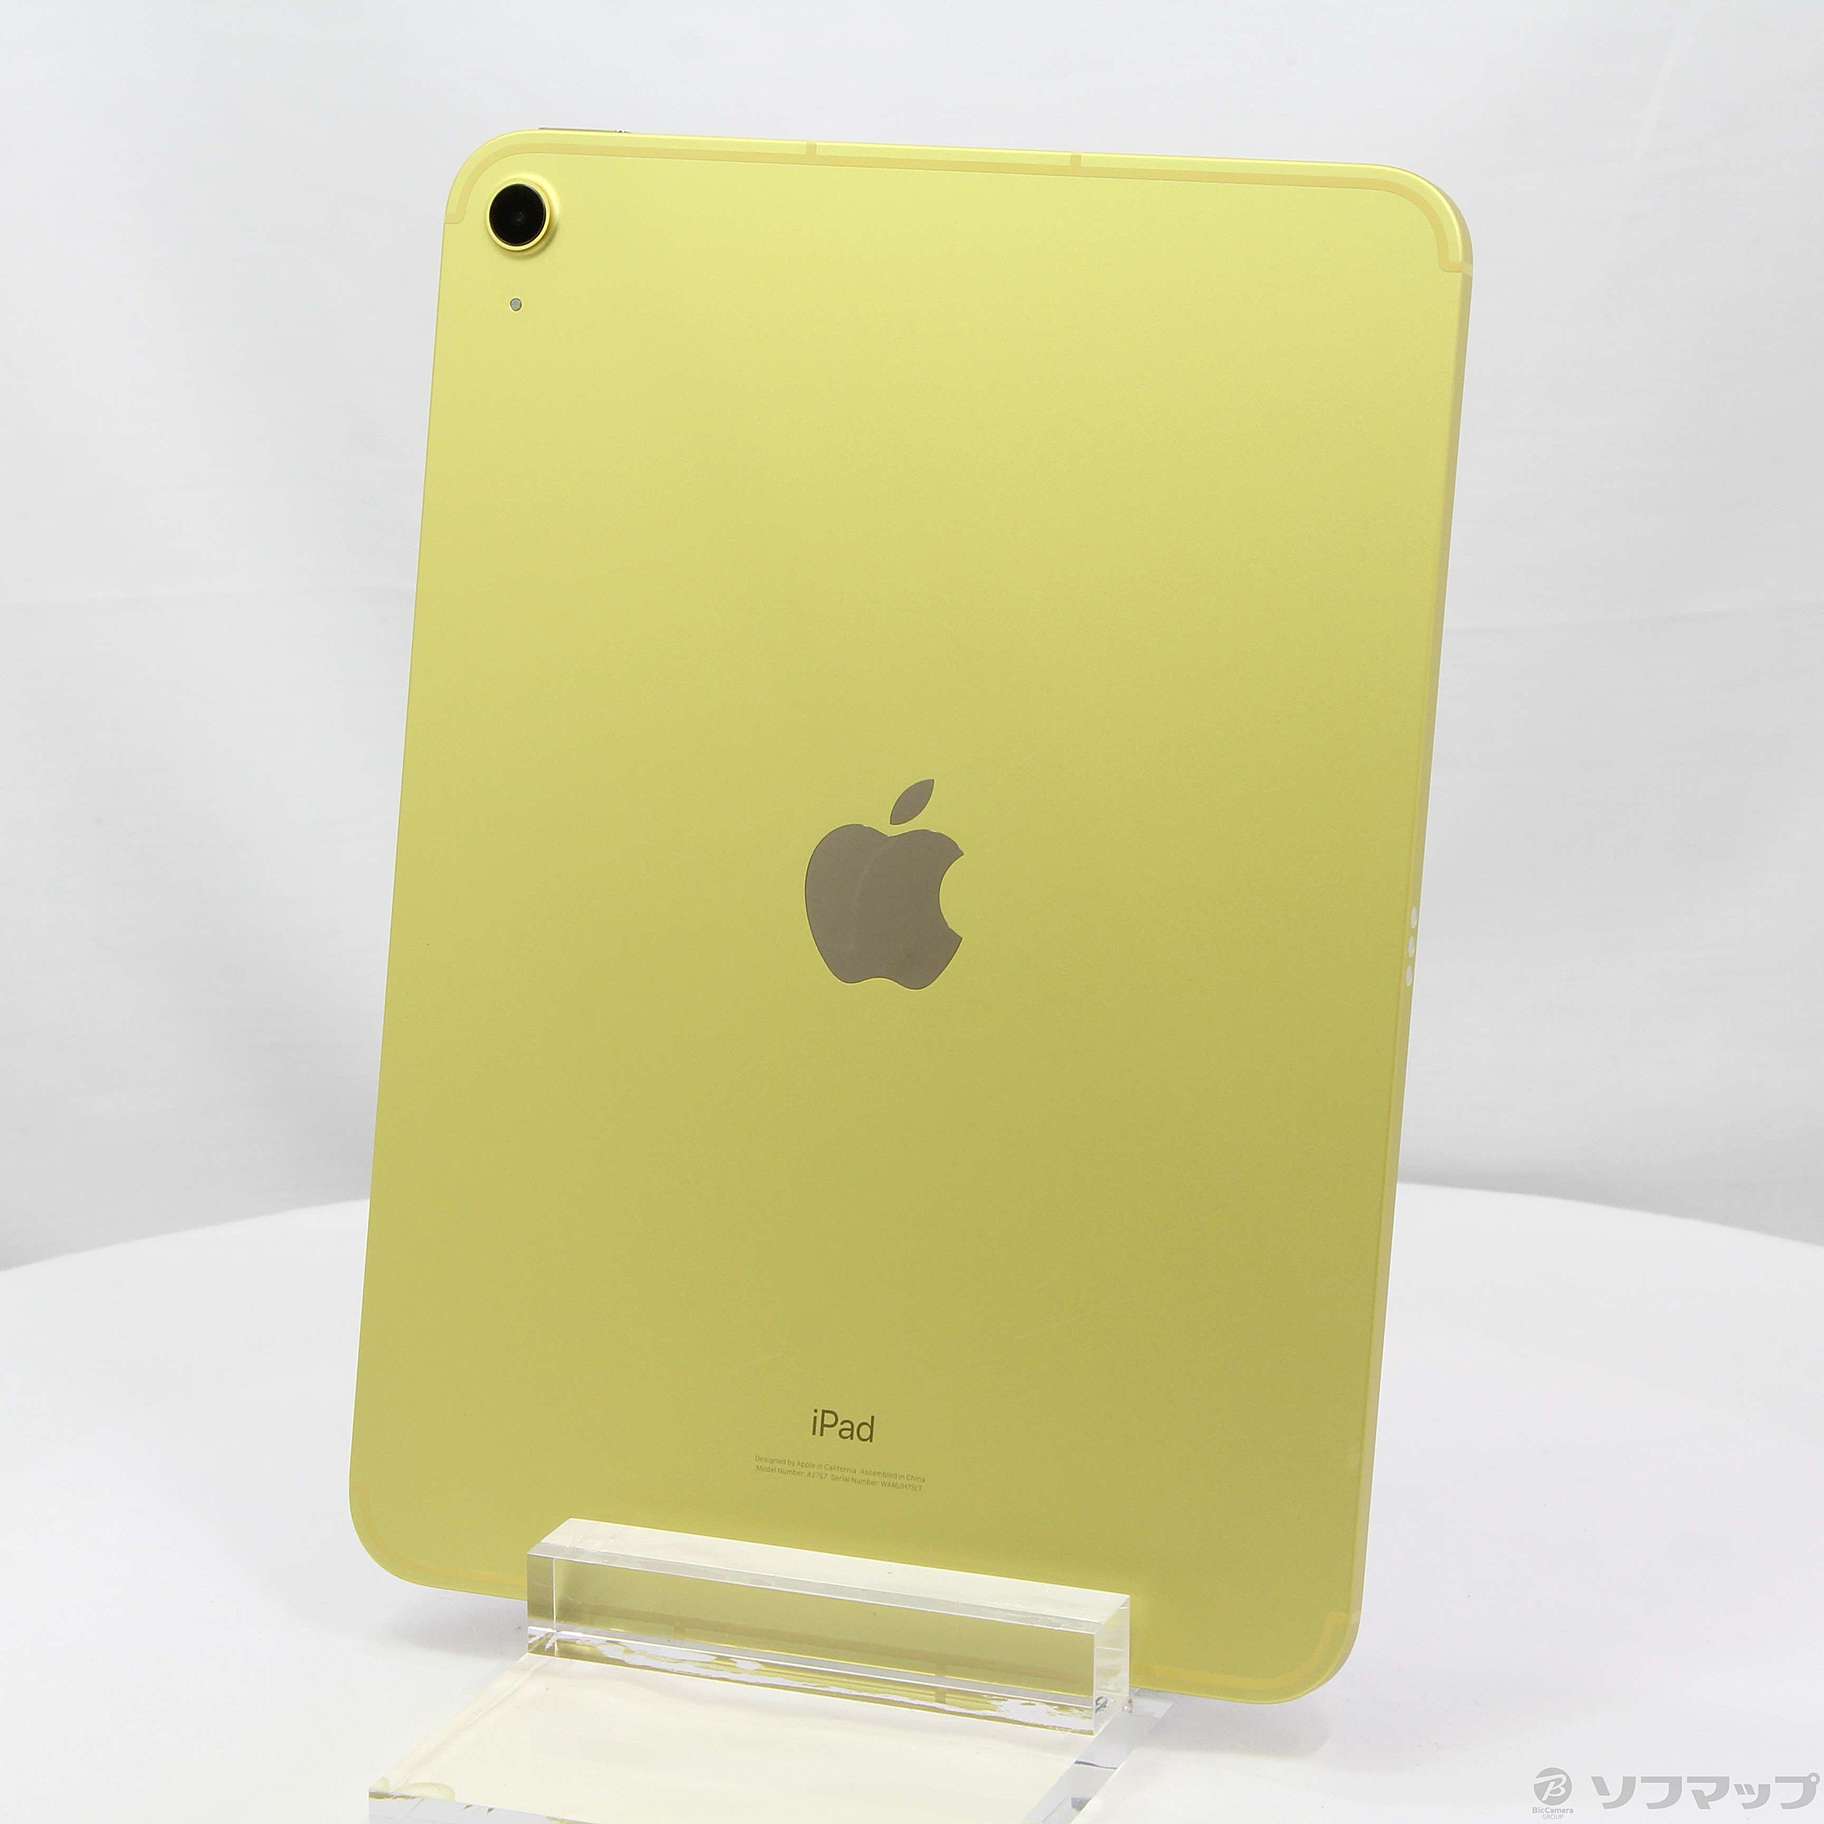 最低価格の セルラー 第10世代 iPad SIMフリー イエロー apple iPad 